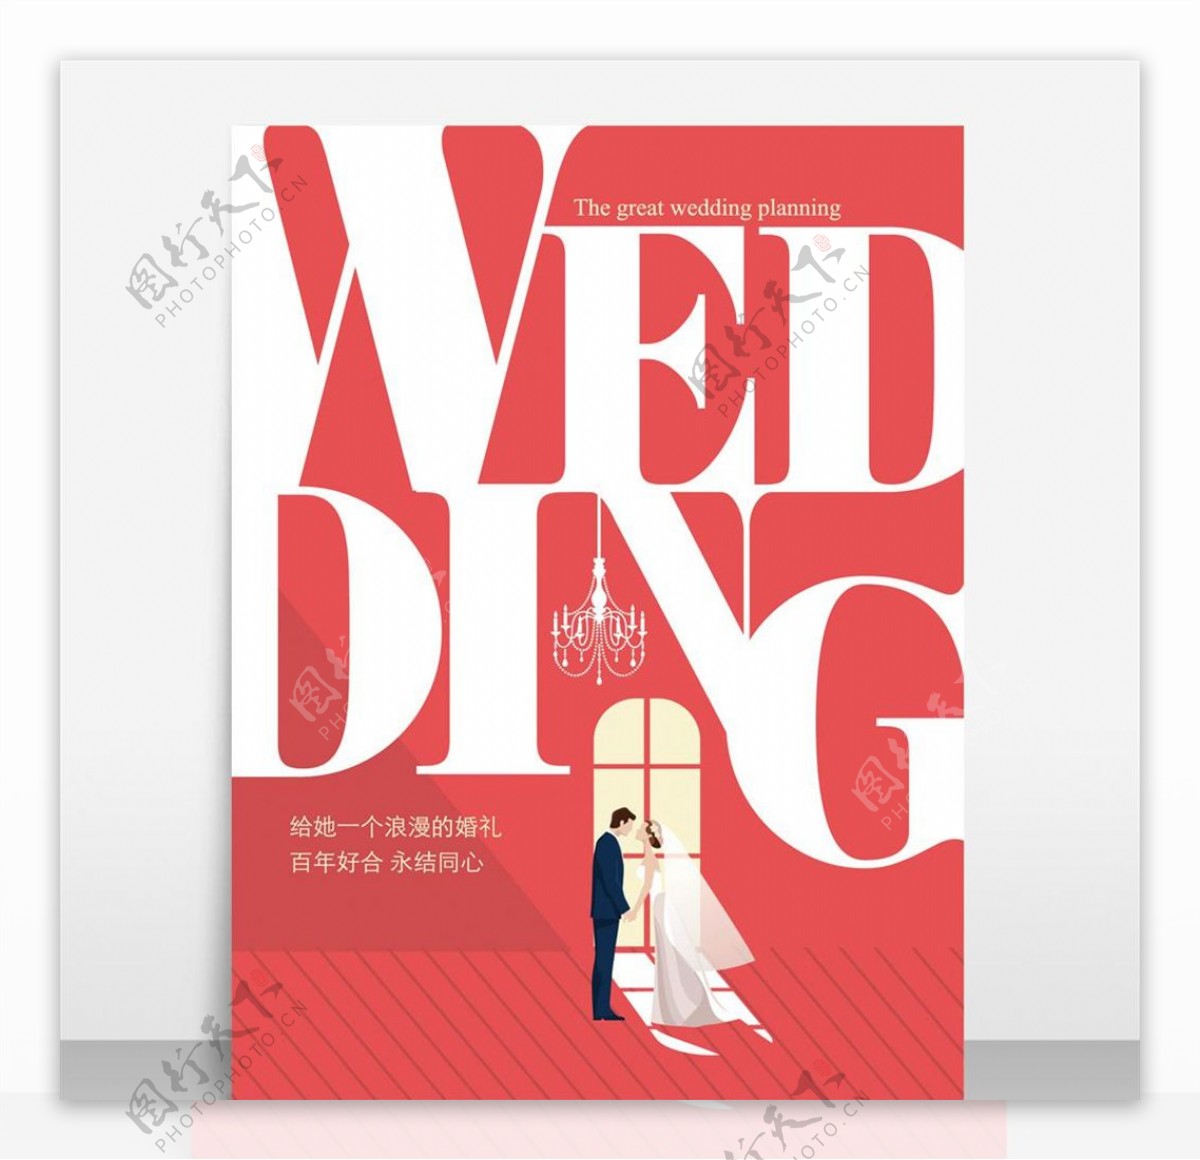 创意简洁矢量婚庆海报设计模板